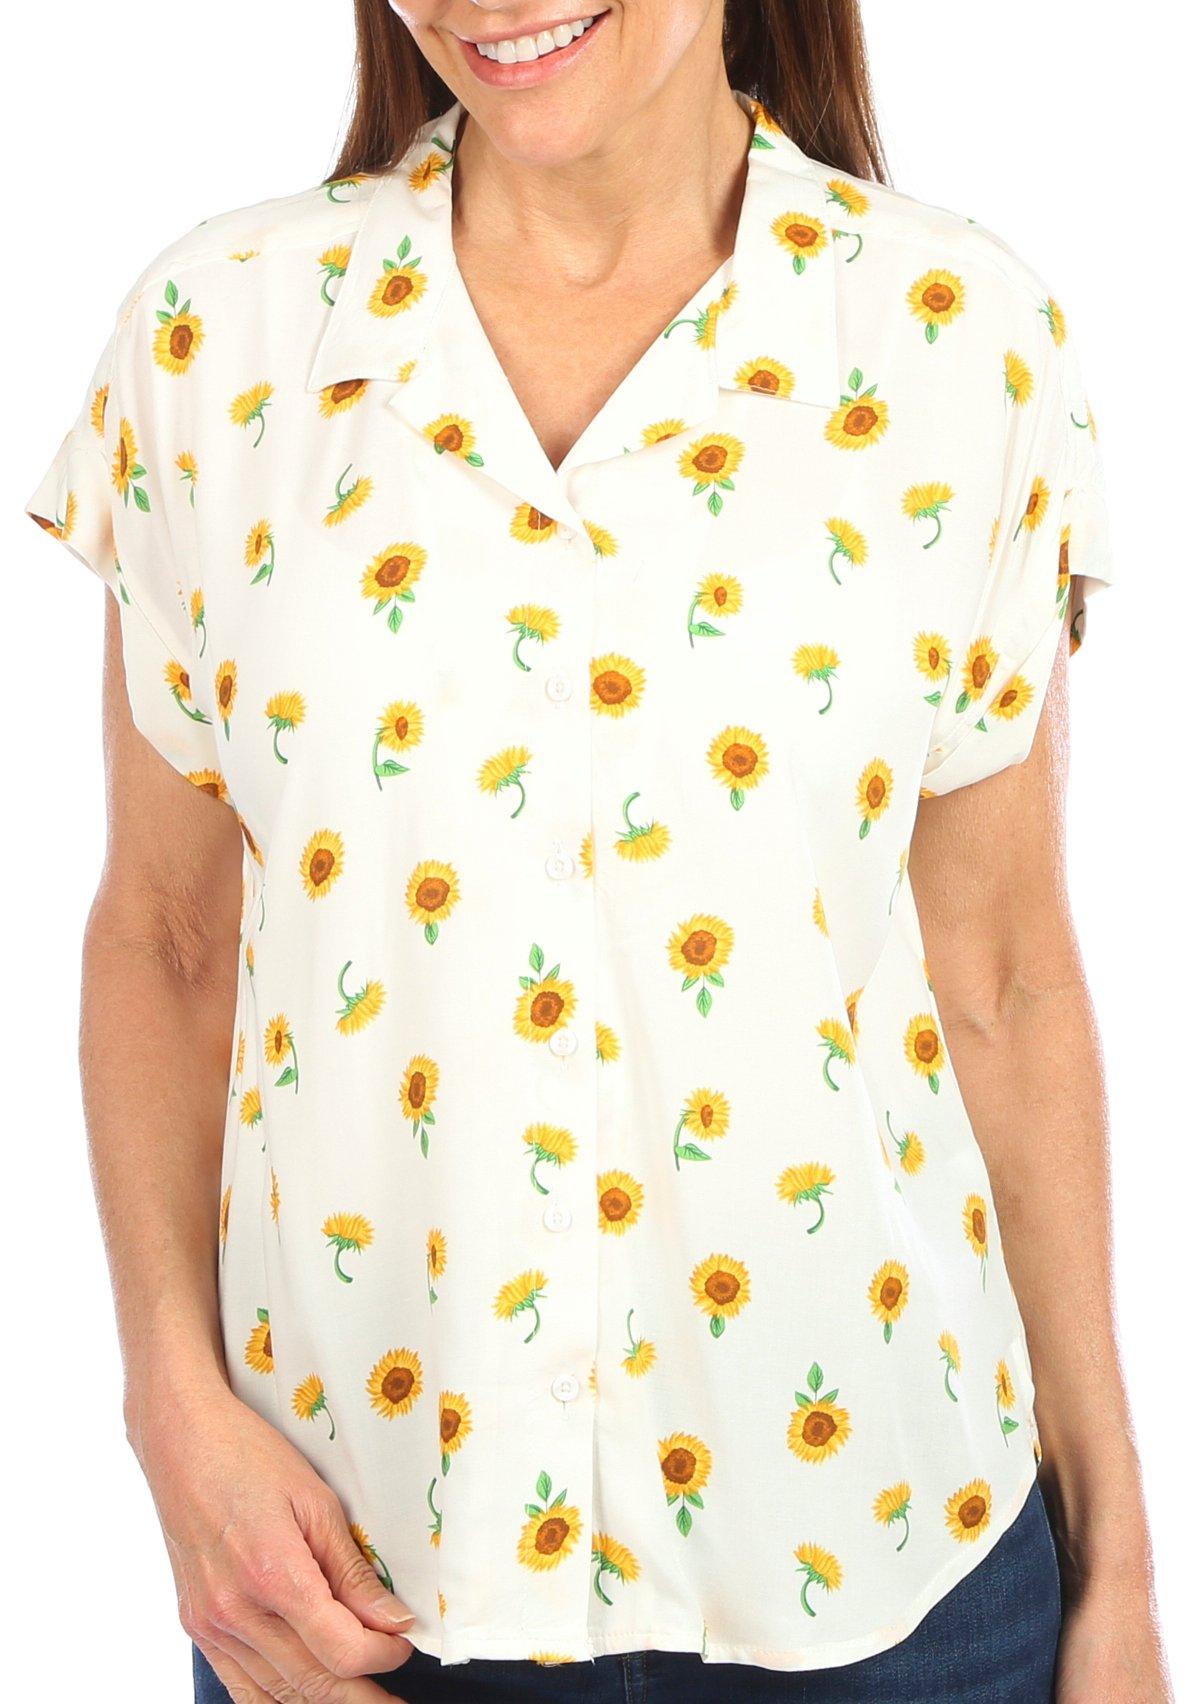 Blue Sol Womens Button Down Sunflower Short Sleeve Top